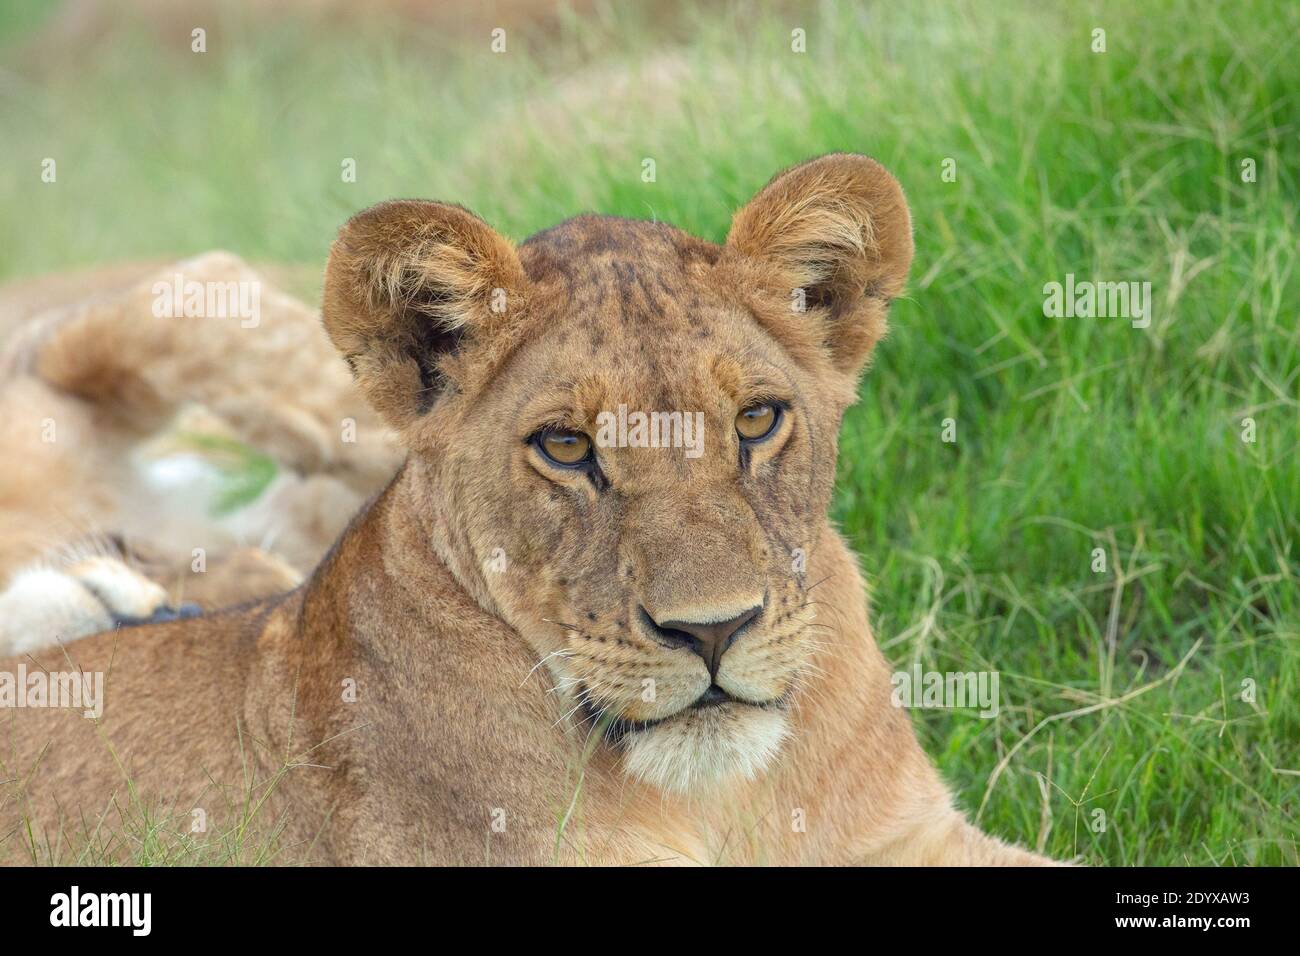 Lioness africain (Panthera lio), détail tête, traits du visage. Contact visuel complet. Des oreilles de grande taille, par comparaison, indiquent un animal plus jeune. Banque D'Images